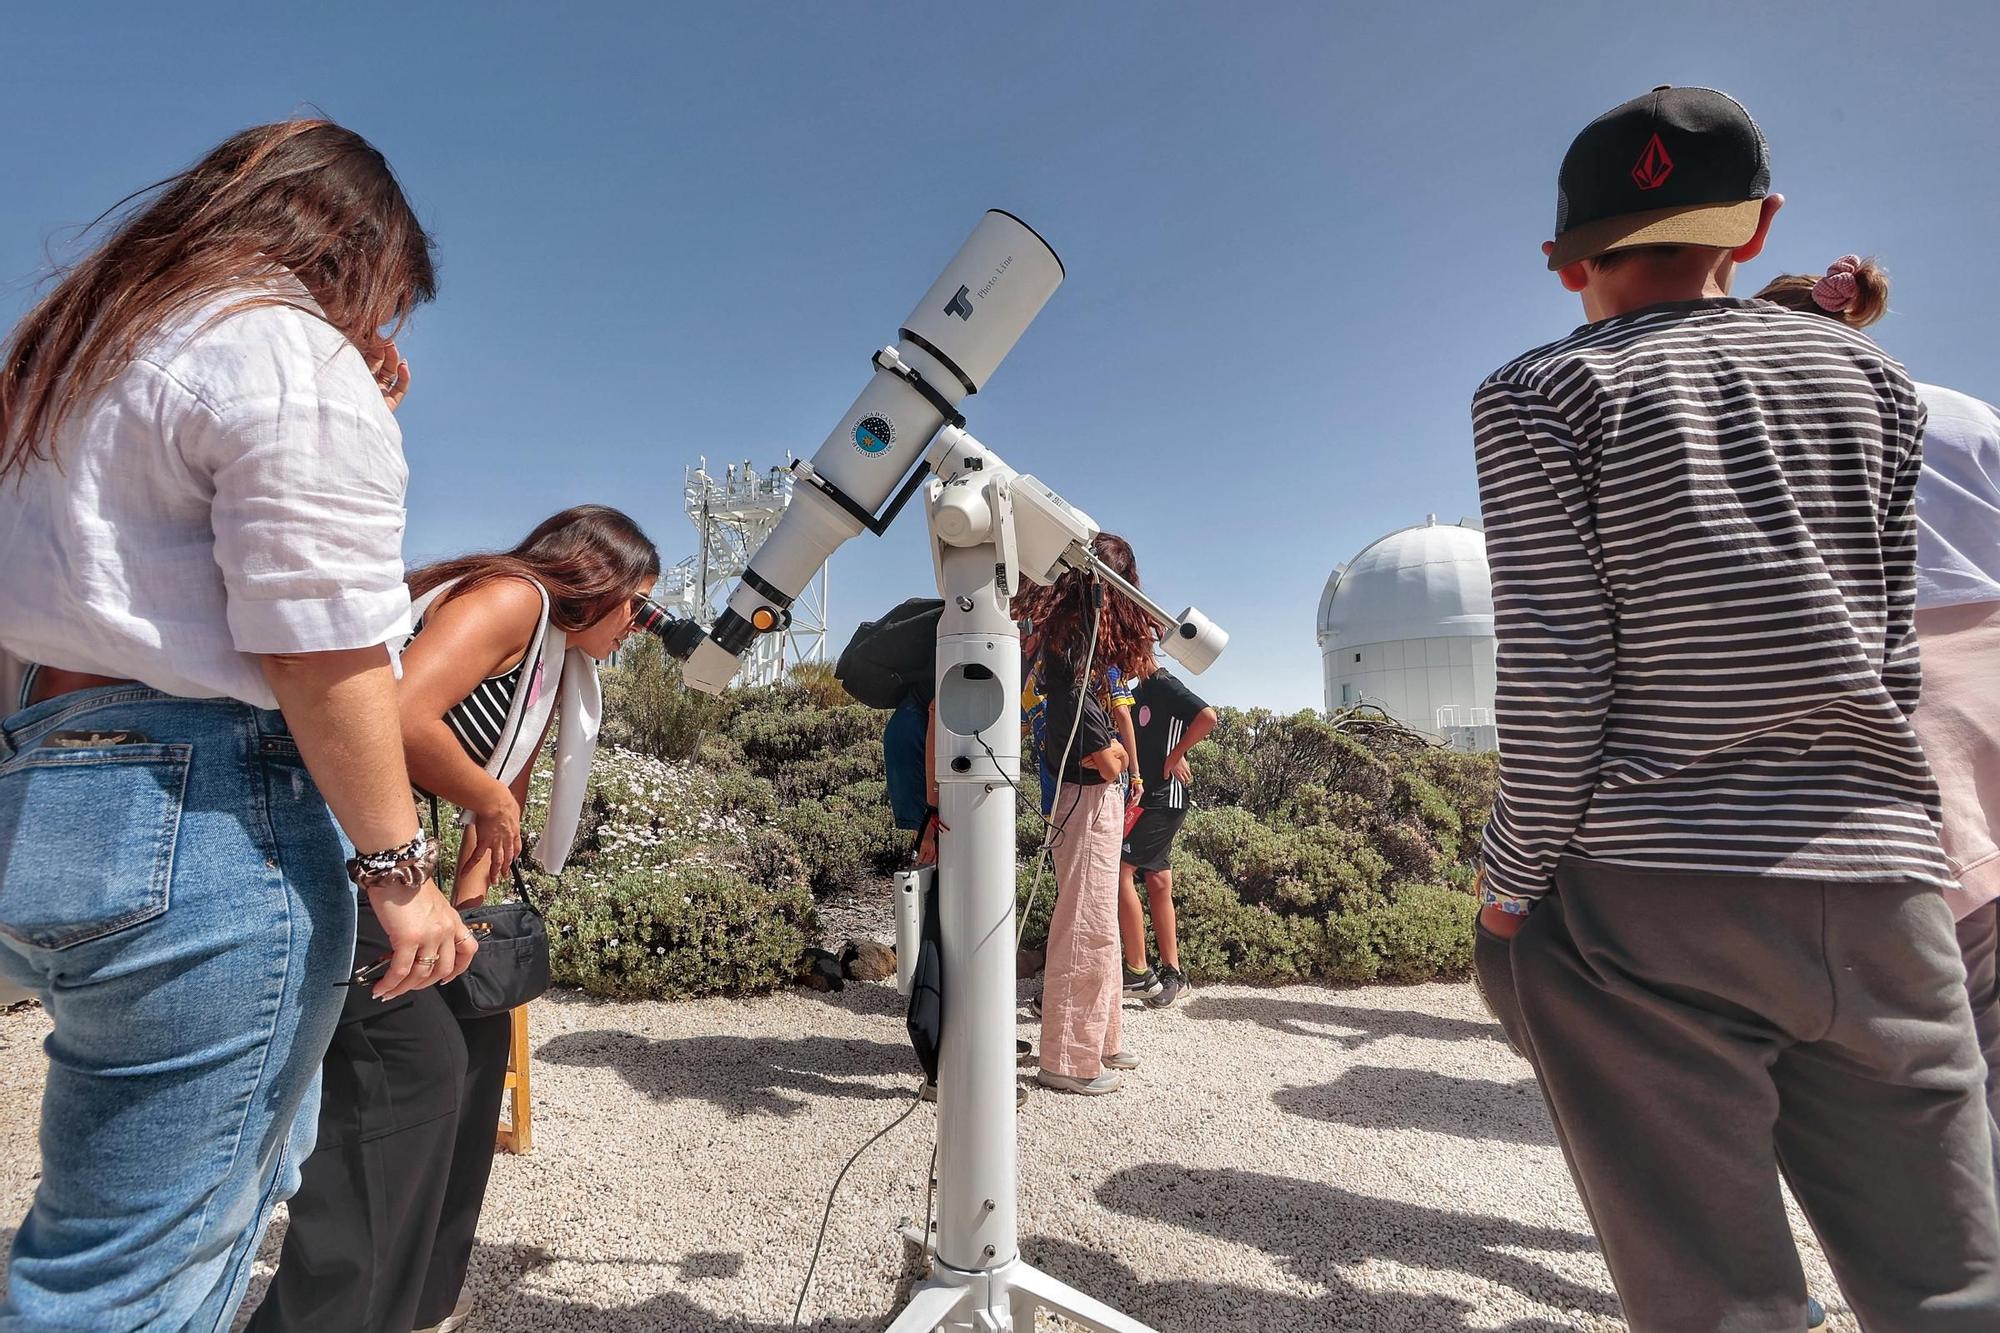 Día de puertas abiertas en el Observatorio del Teide